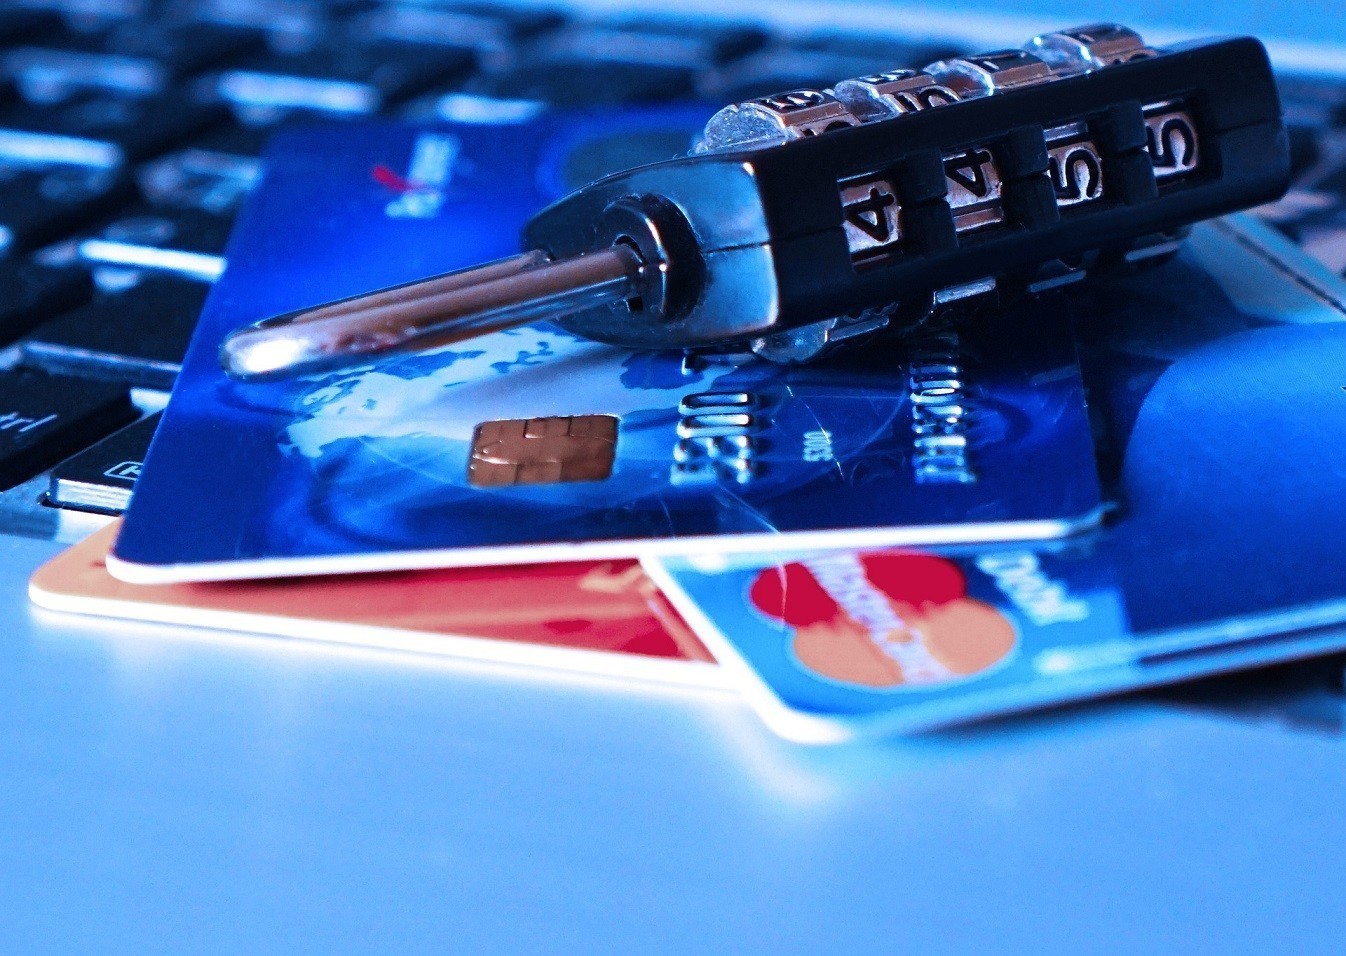 Έρευνα για την πιστωτική κάρτα: Πώς μέσα σε ελάχιστα δευτερόλεπτα μπορούν να κλέψουν το PIN σας